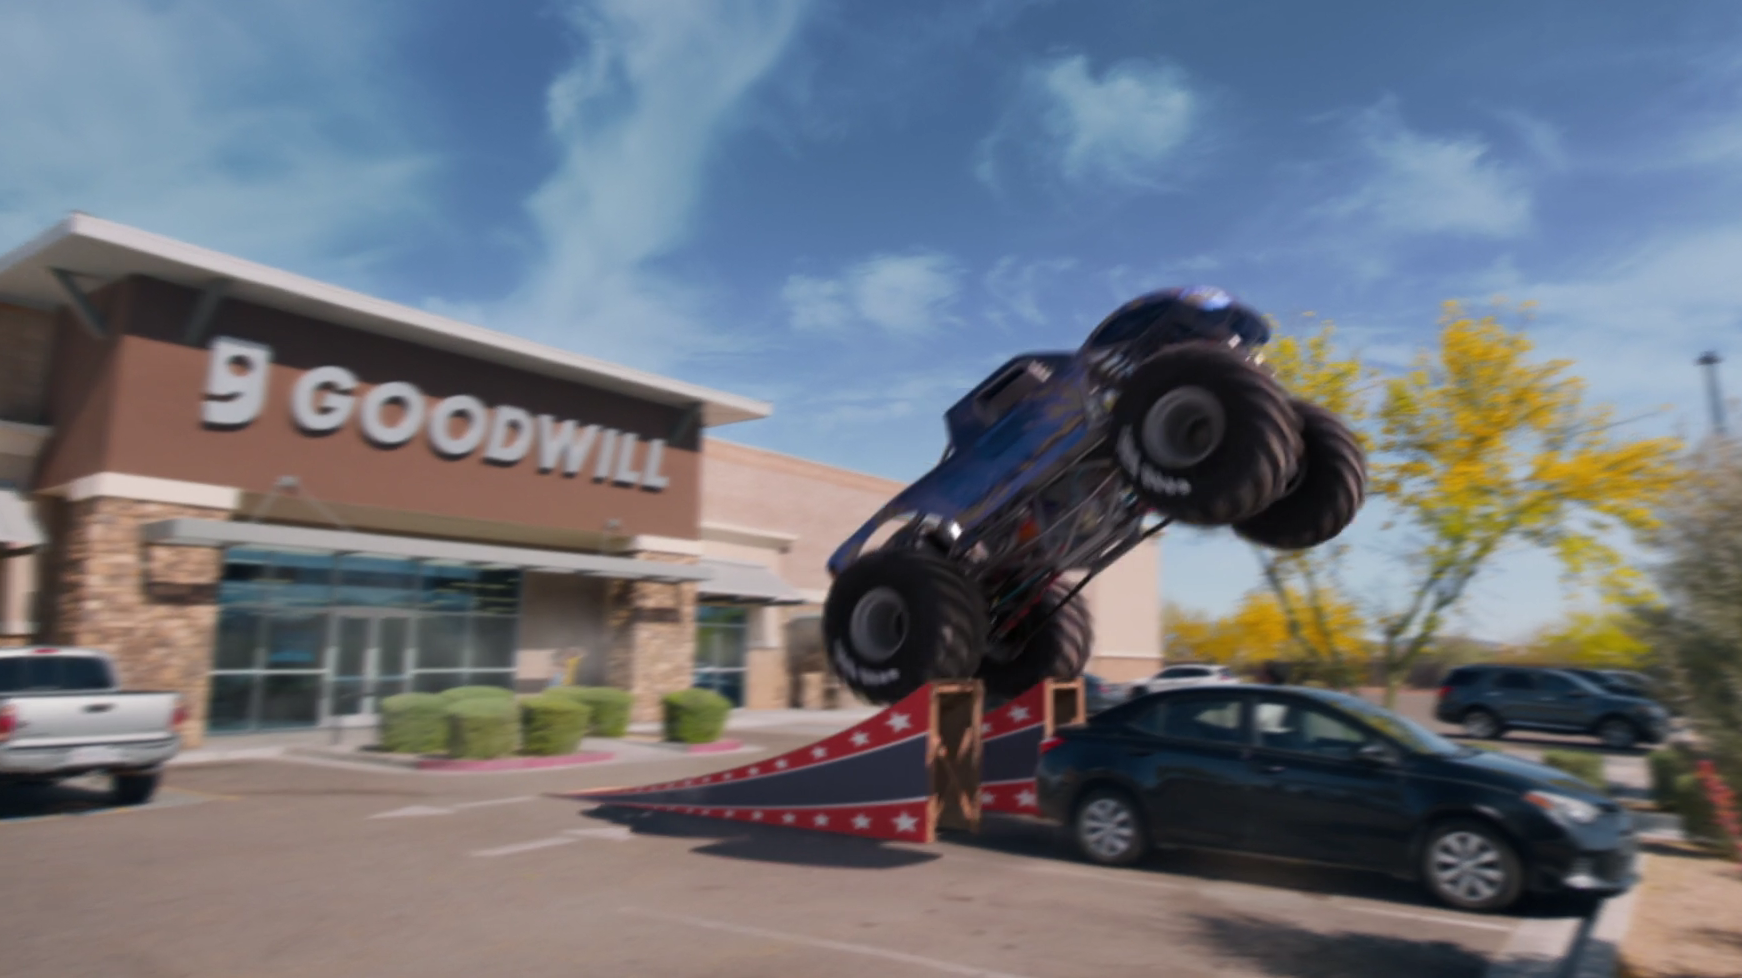 Goodwill – Monster Truck